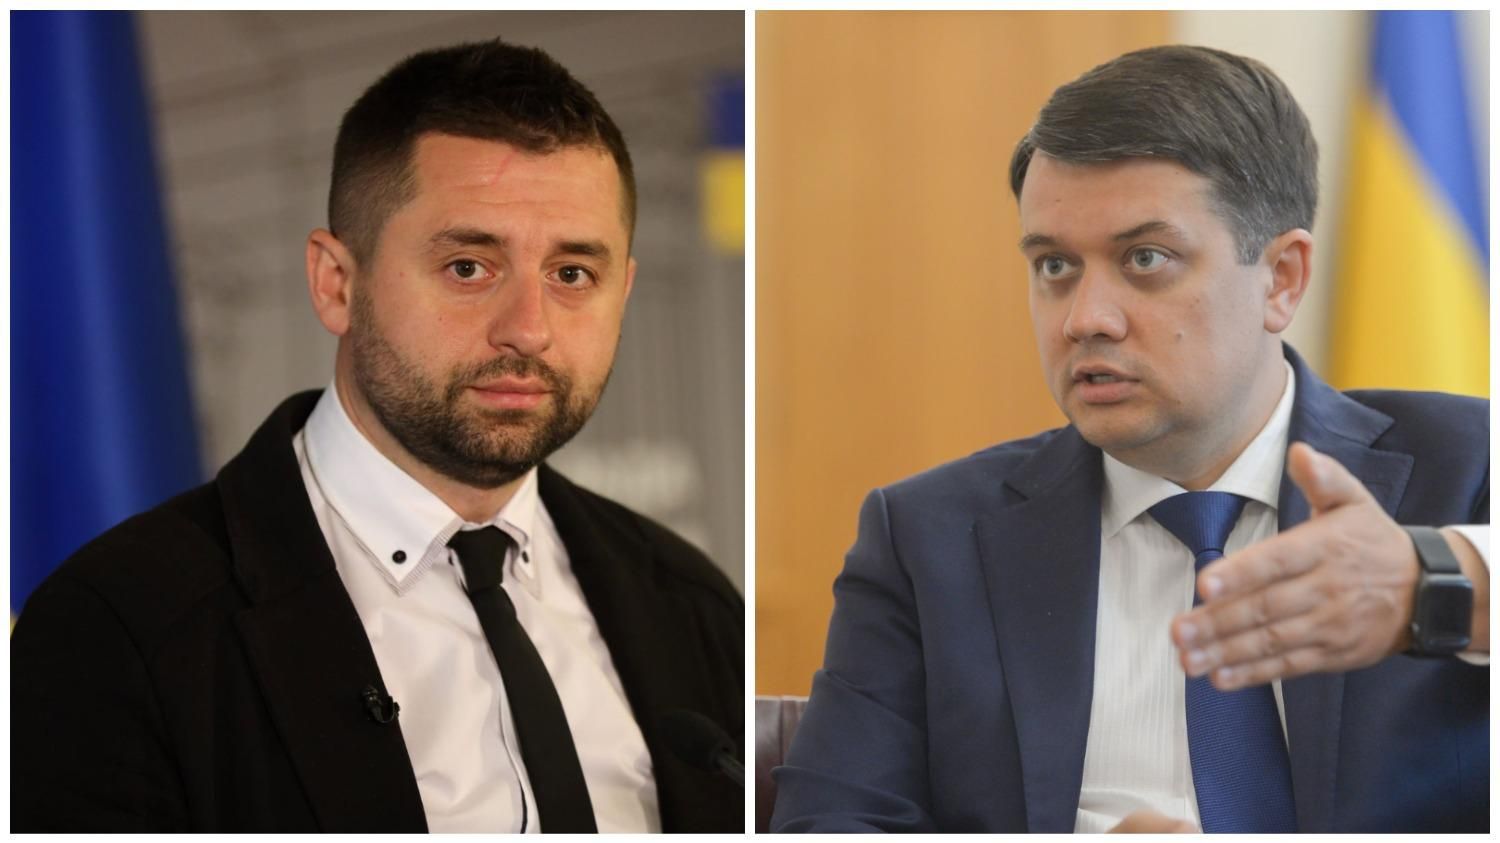 Арахамия обзванивал депутатов из-за подписей относительно Разумкова: какова ситуация в Раде